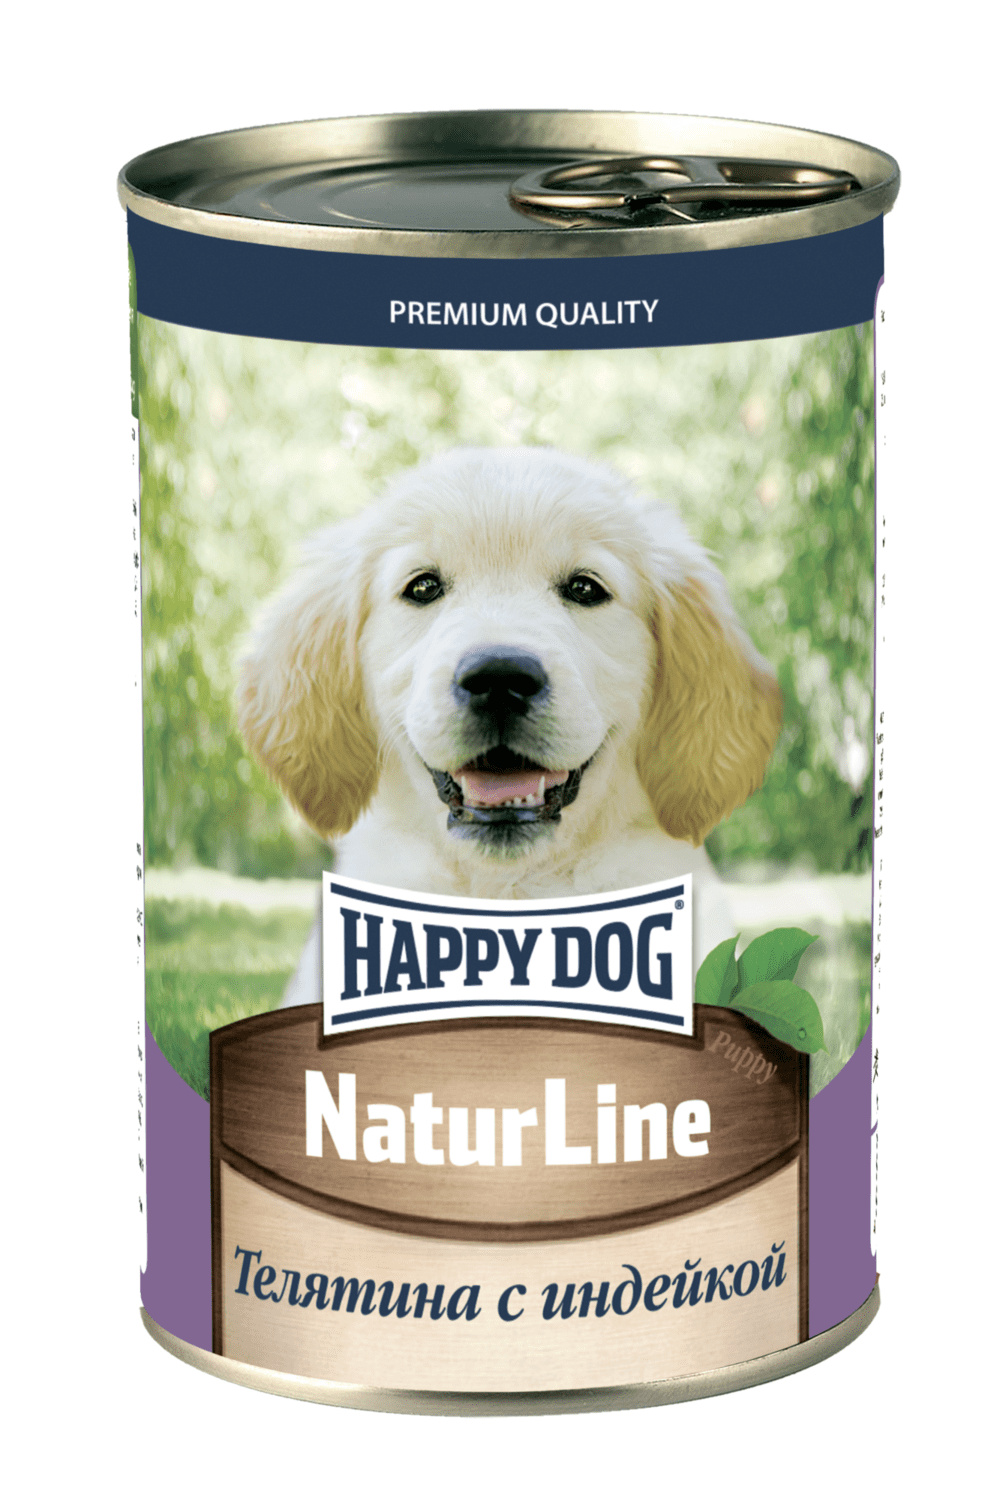 Happy dog Happy dog консервы для щенков с нежной телятиной, печенью, сердцем и рисом (410 г)